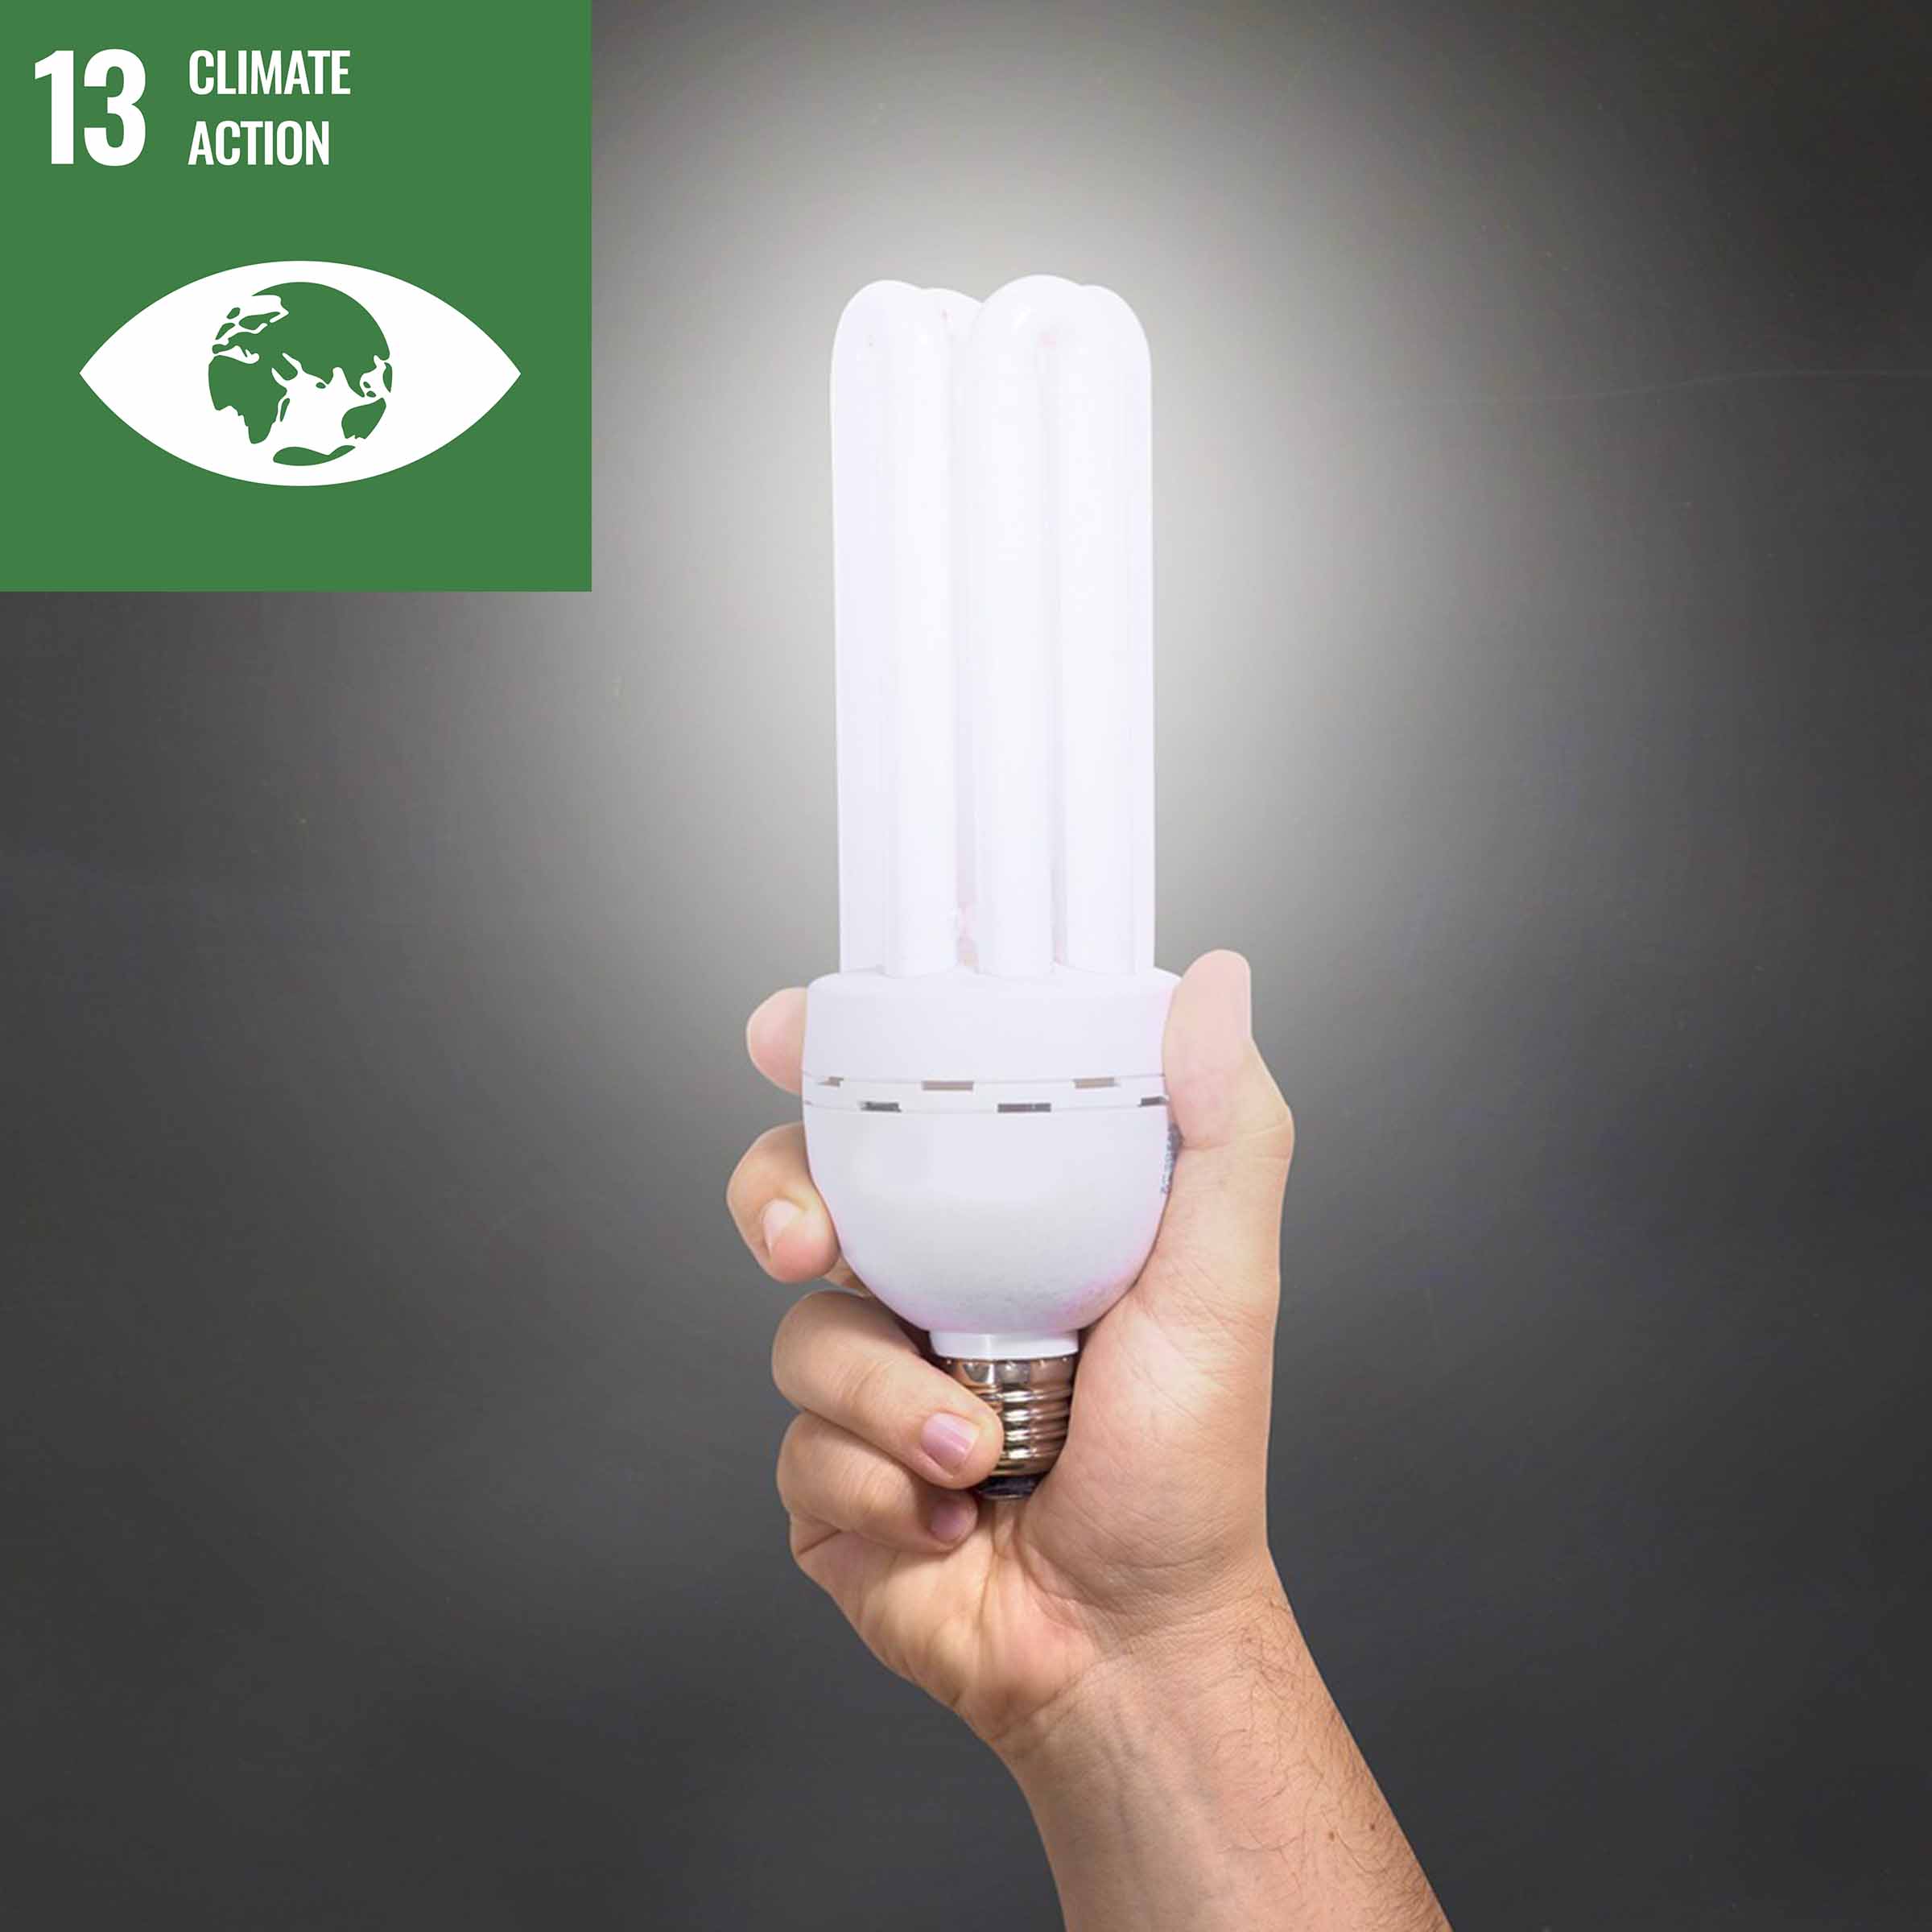 LED lamp SDG 13